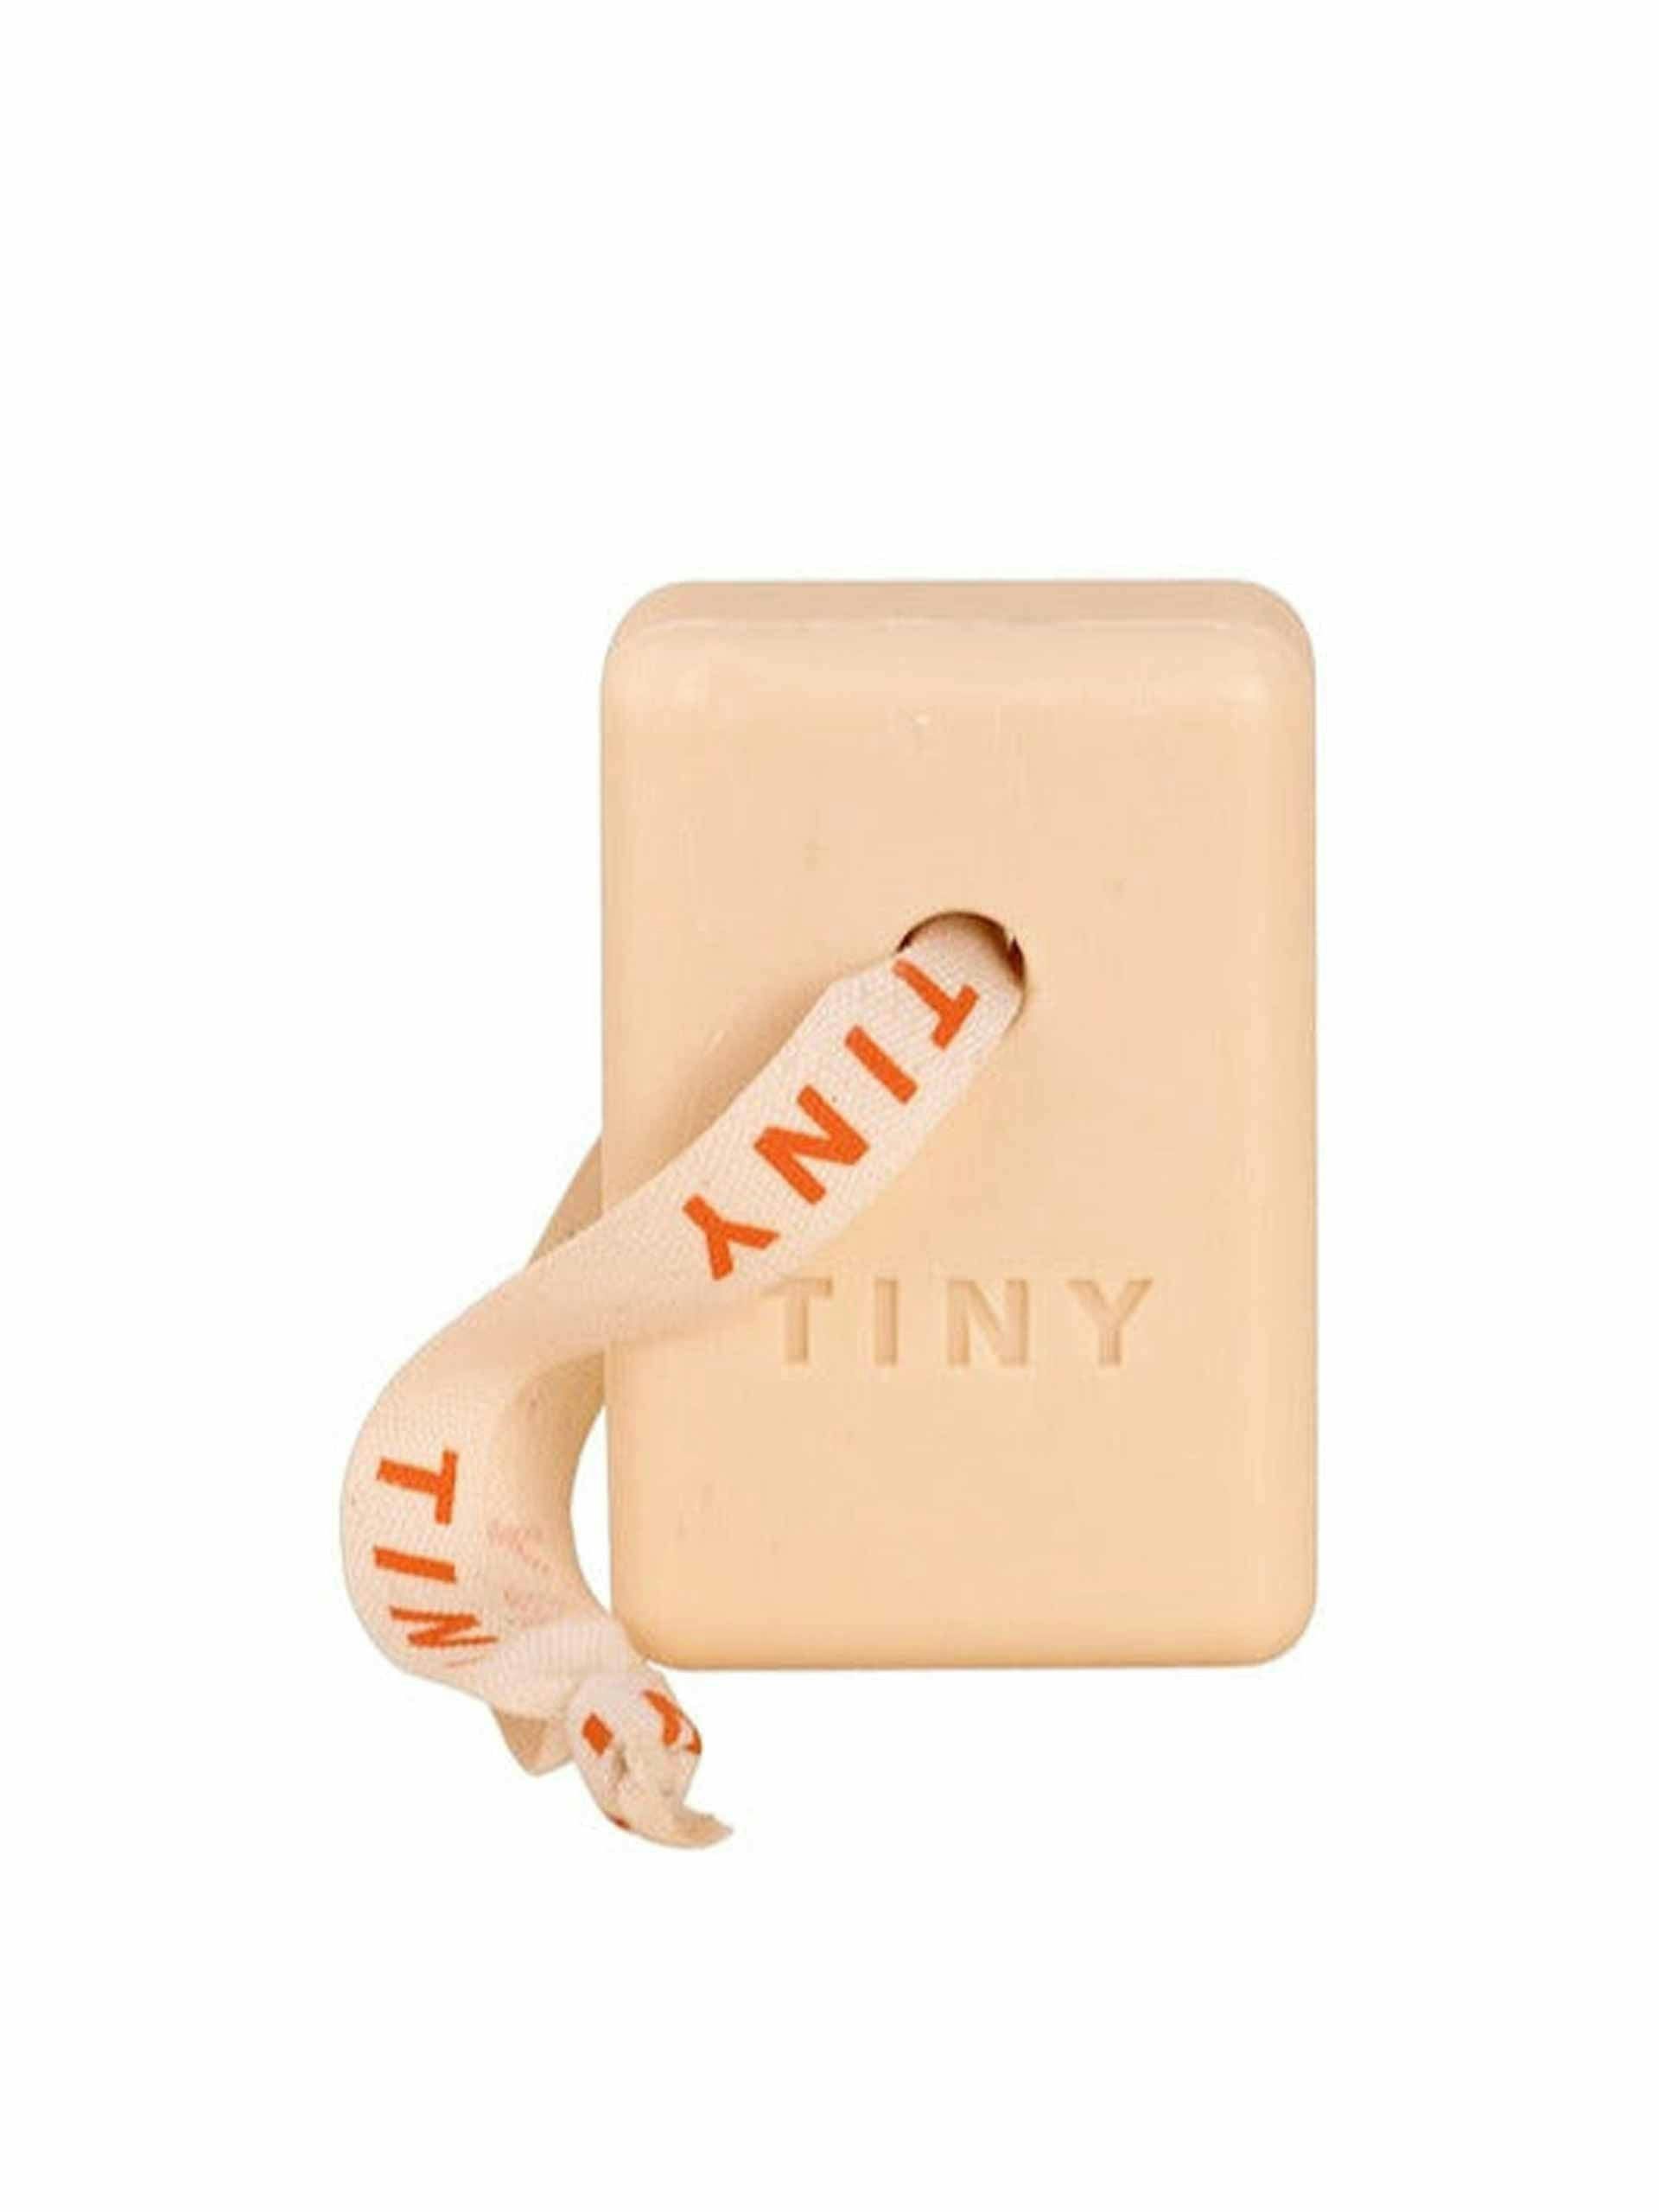 Tiny soap